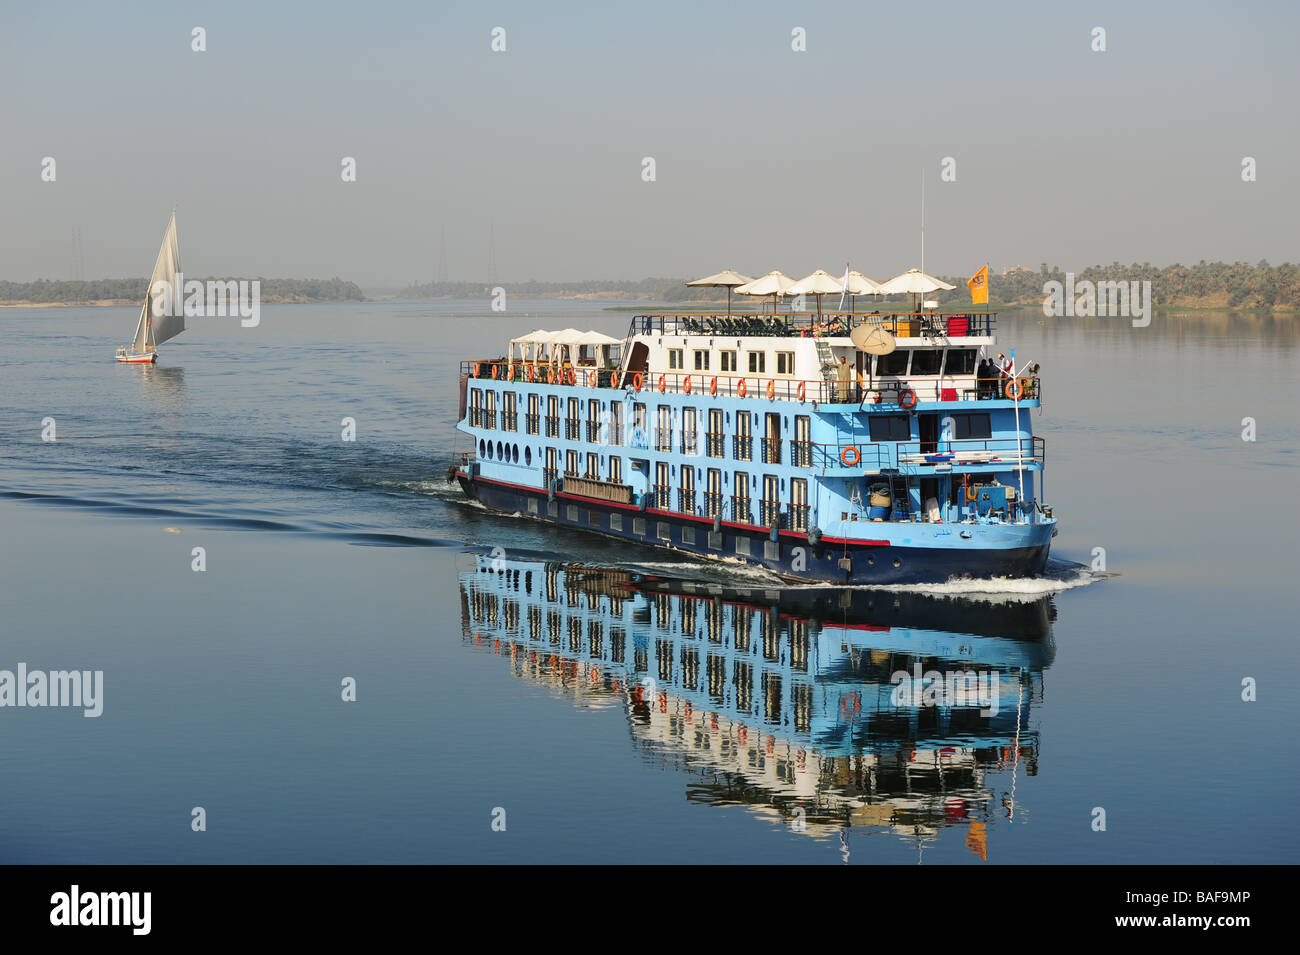 L'Afrique l'Égypte un bateau de croisière du Nil vers le nord dans les eaux calmes avec une felouque voilier derrière elle Banque D'Images